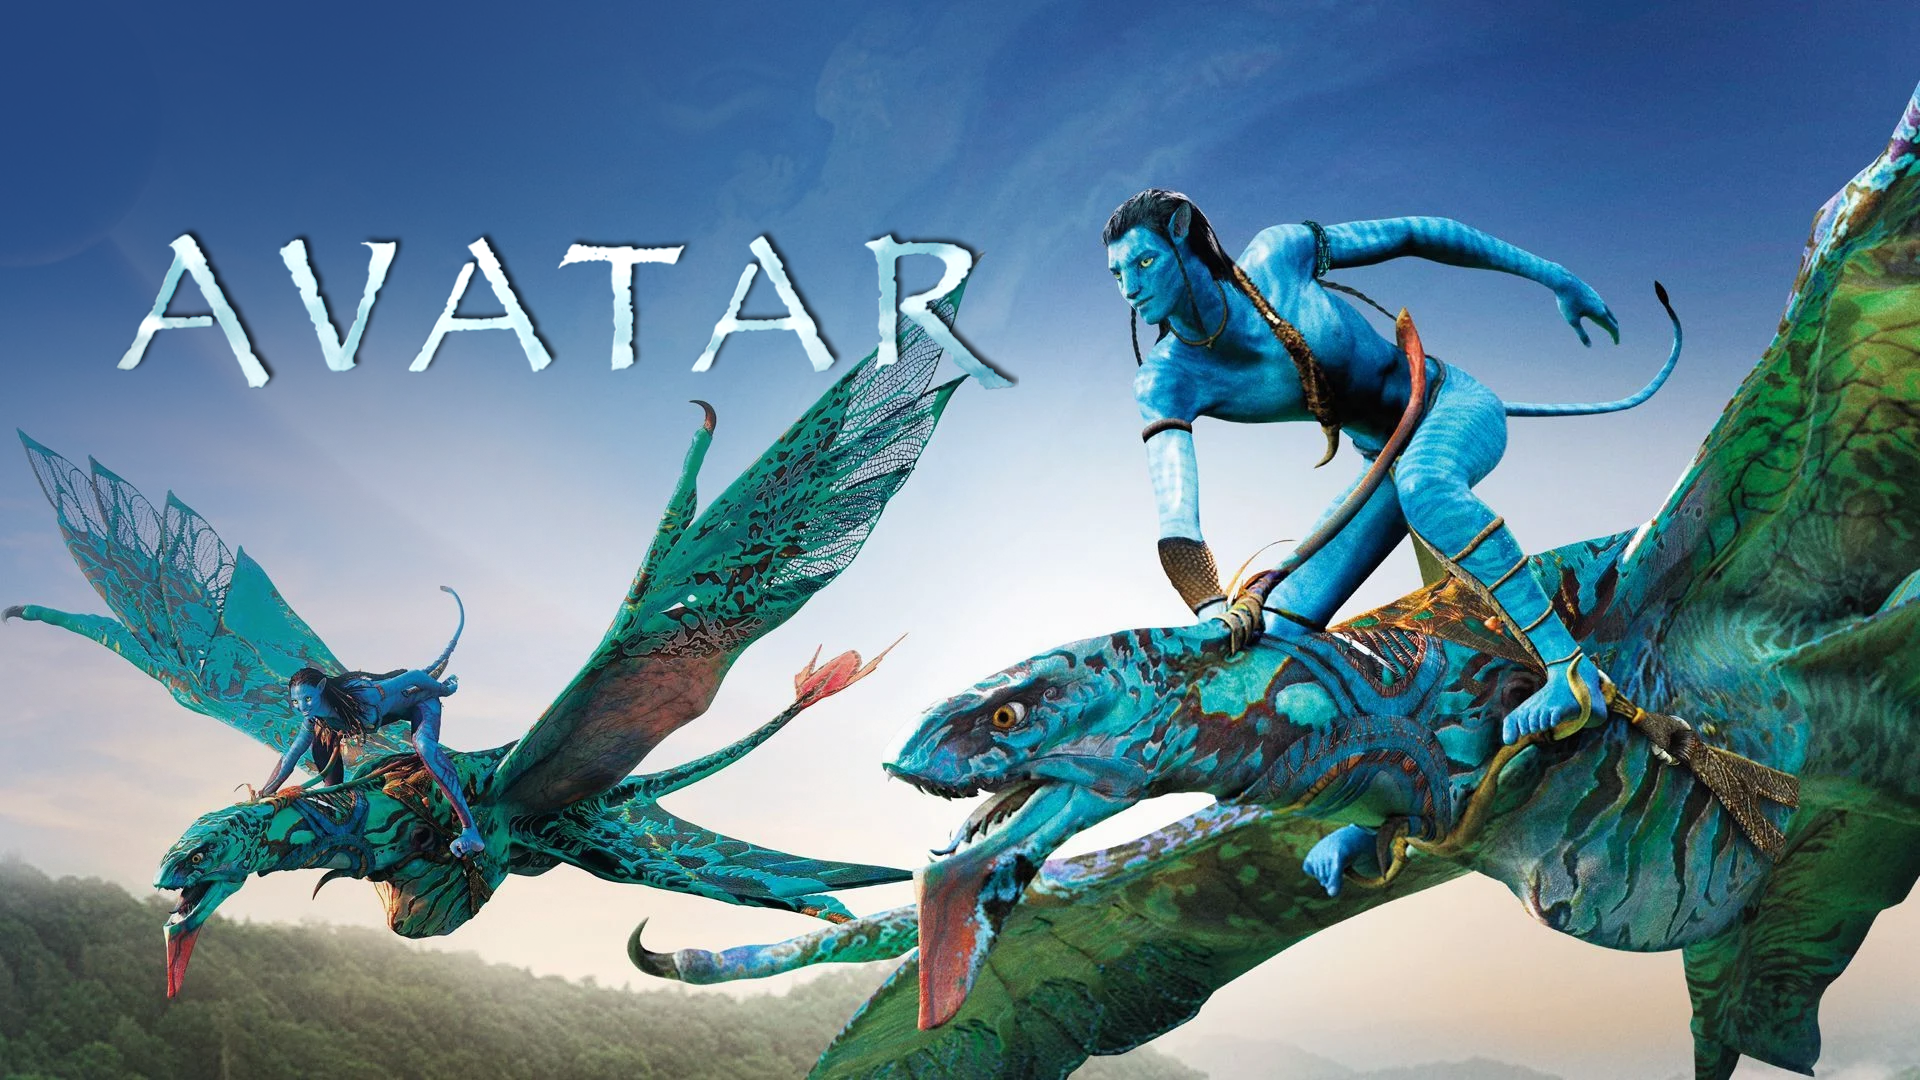 Avatar The way of water bị chỉ trích xem thường văn hóa bản địa